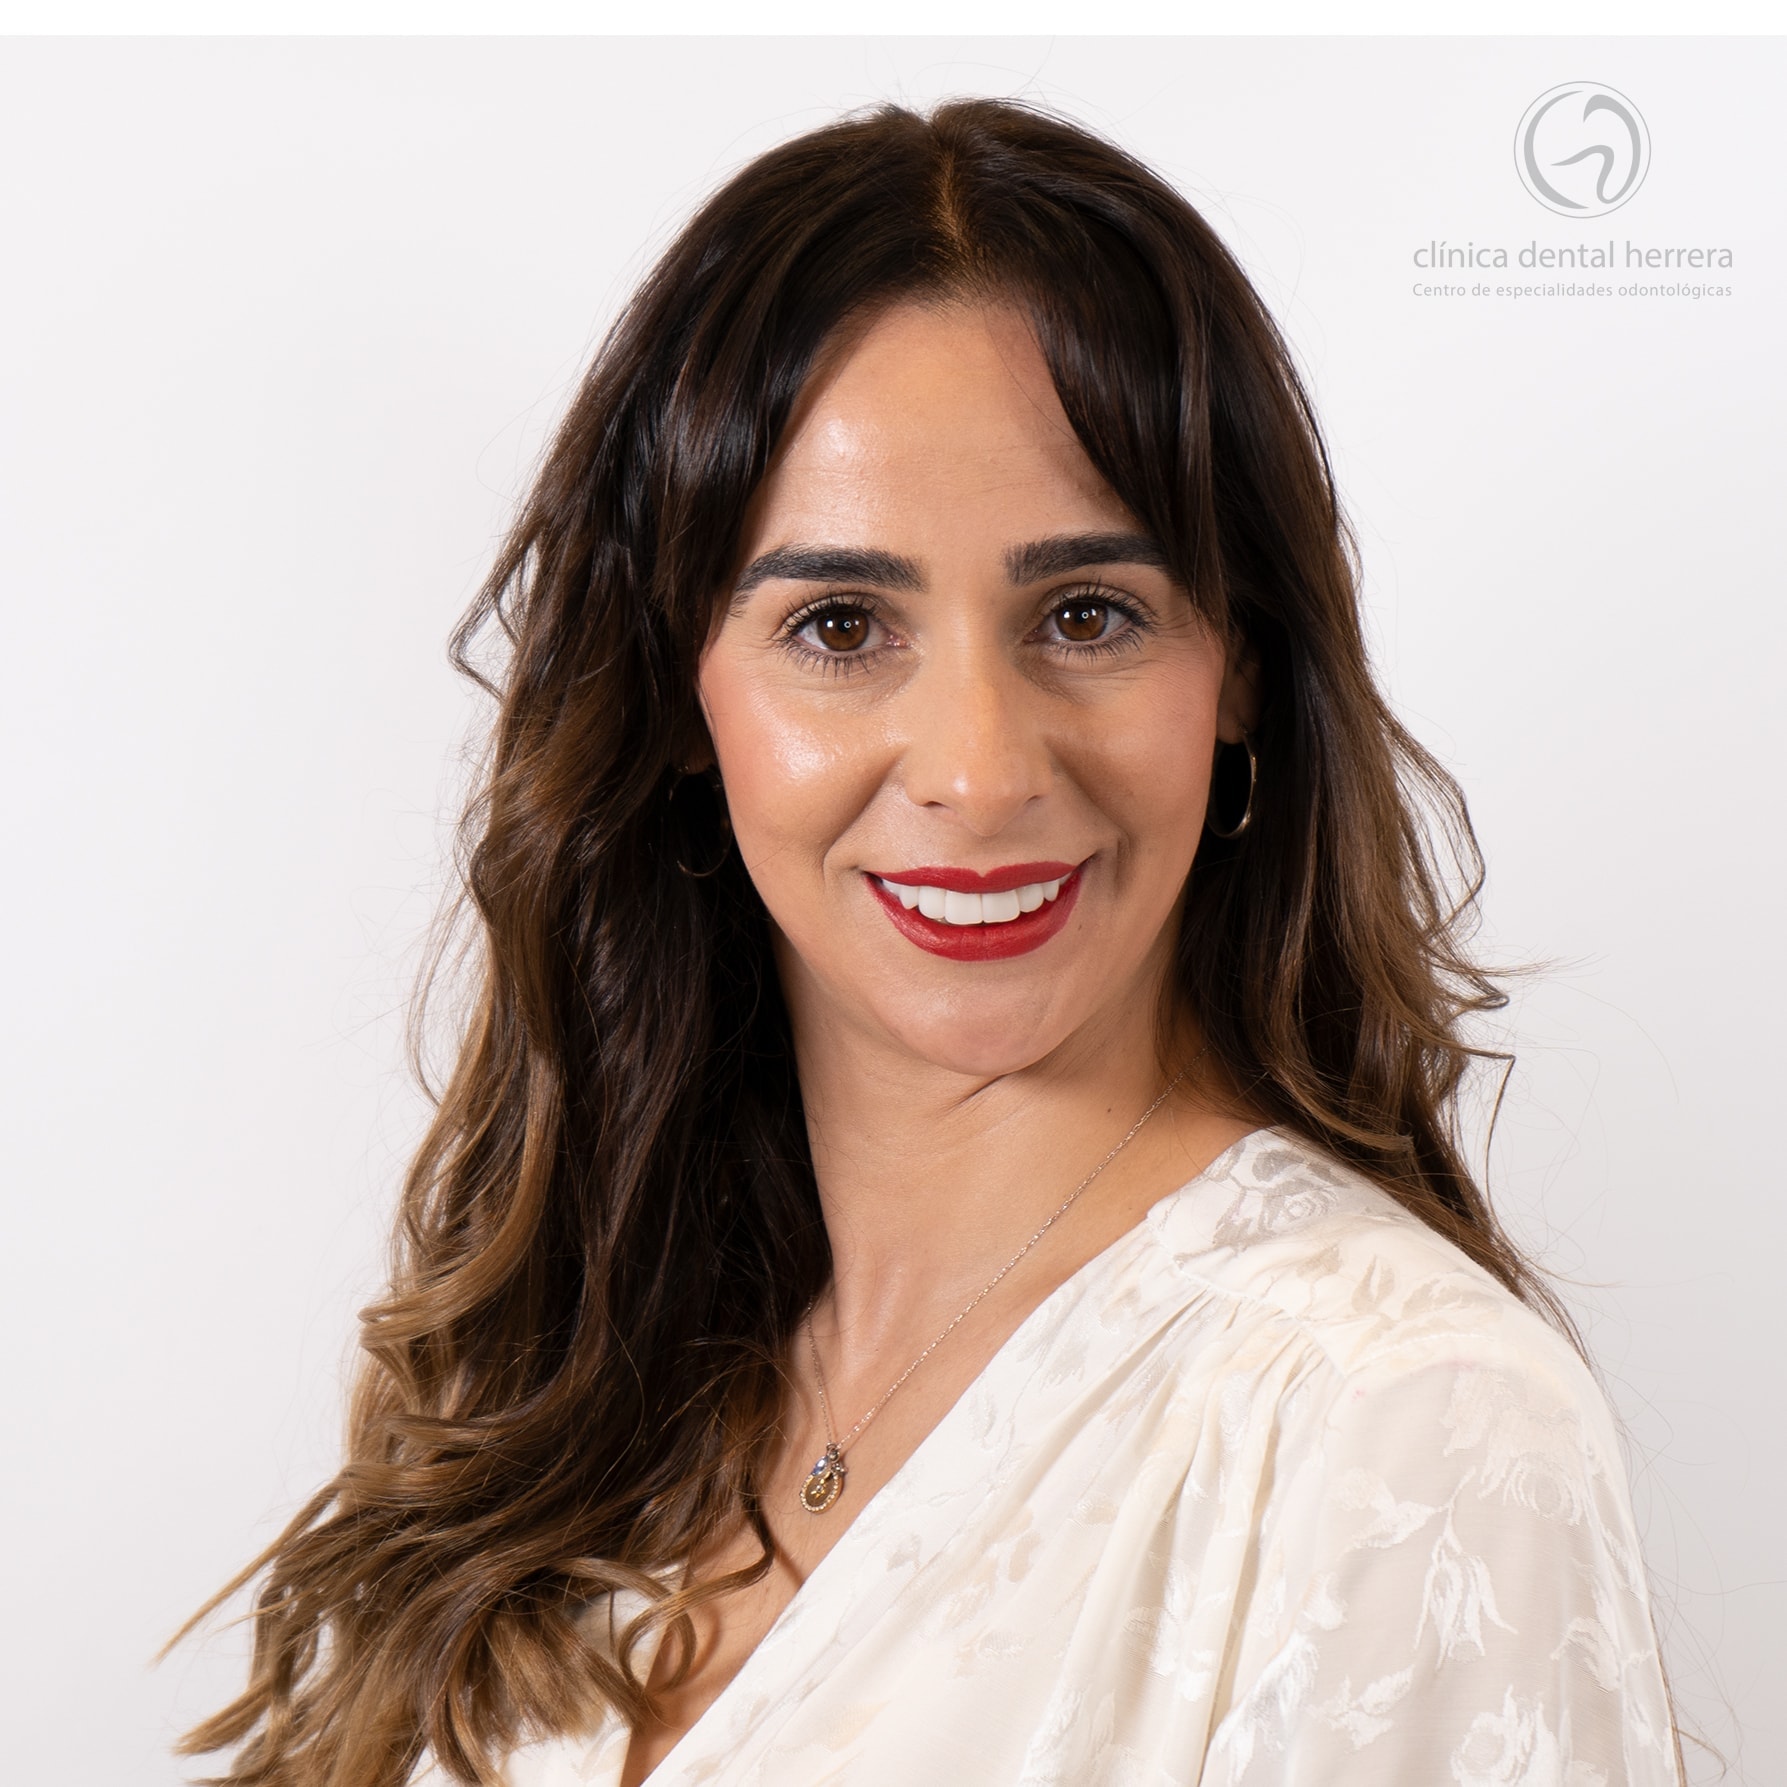 María Molina. Kieferorthopädie, Zahnimplantate und Zahnverblendungen 50